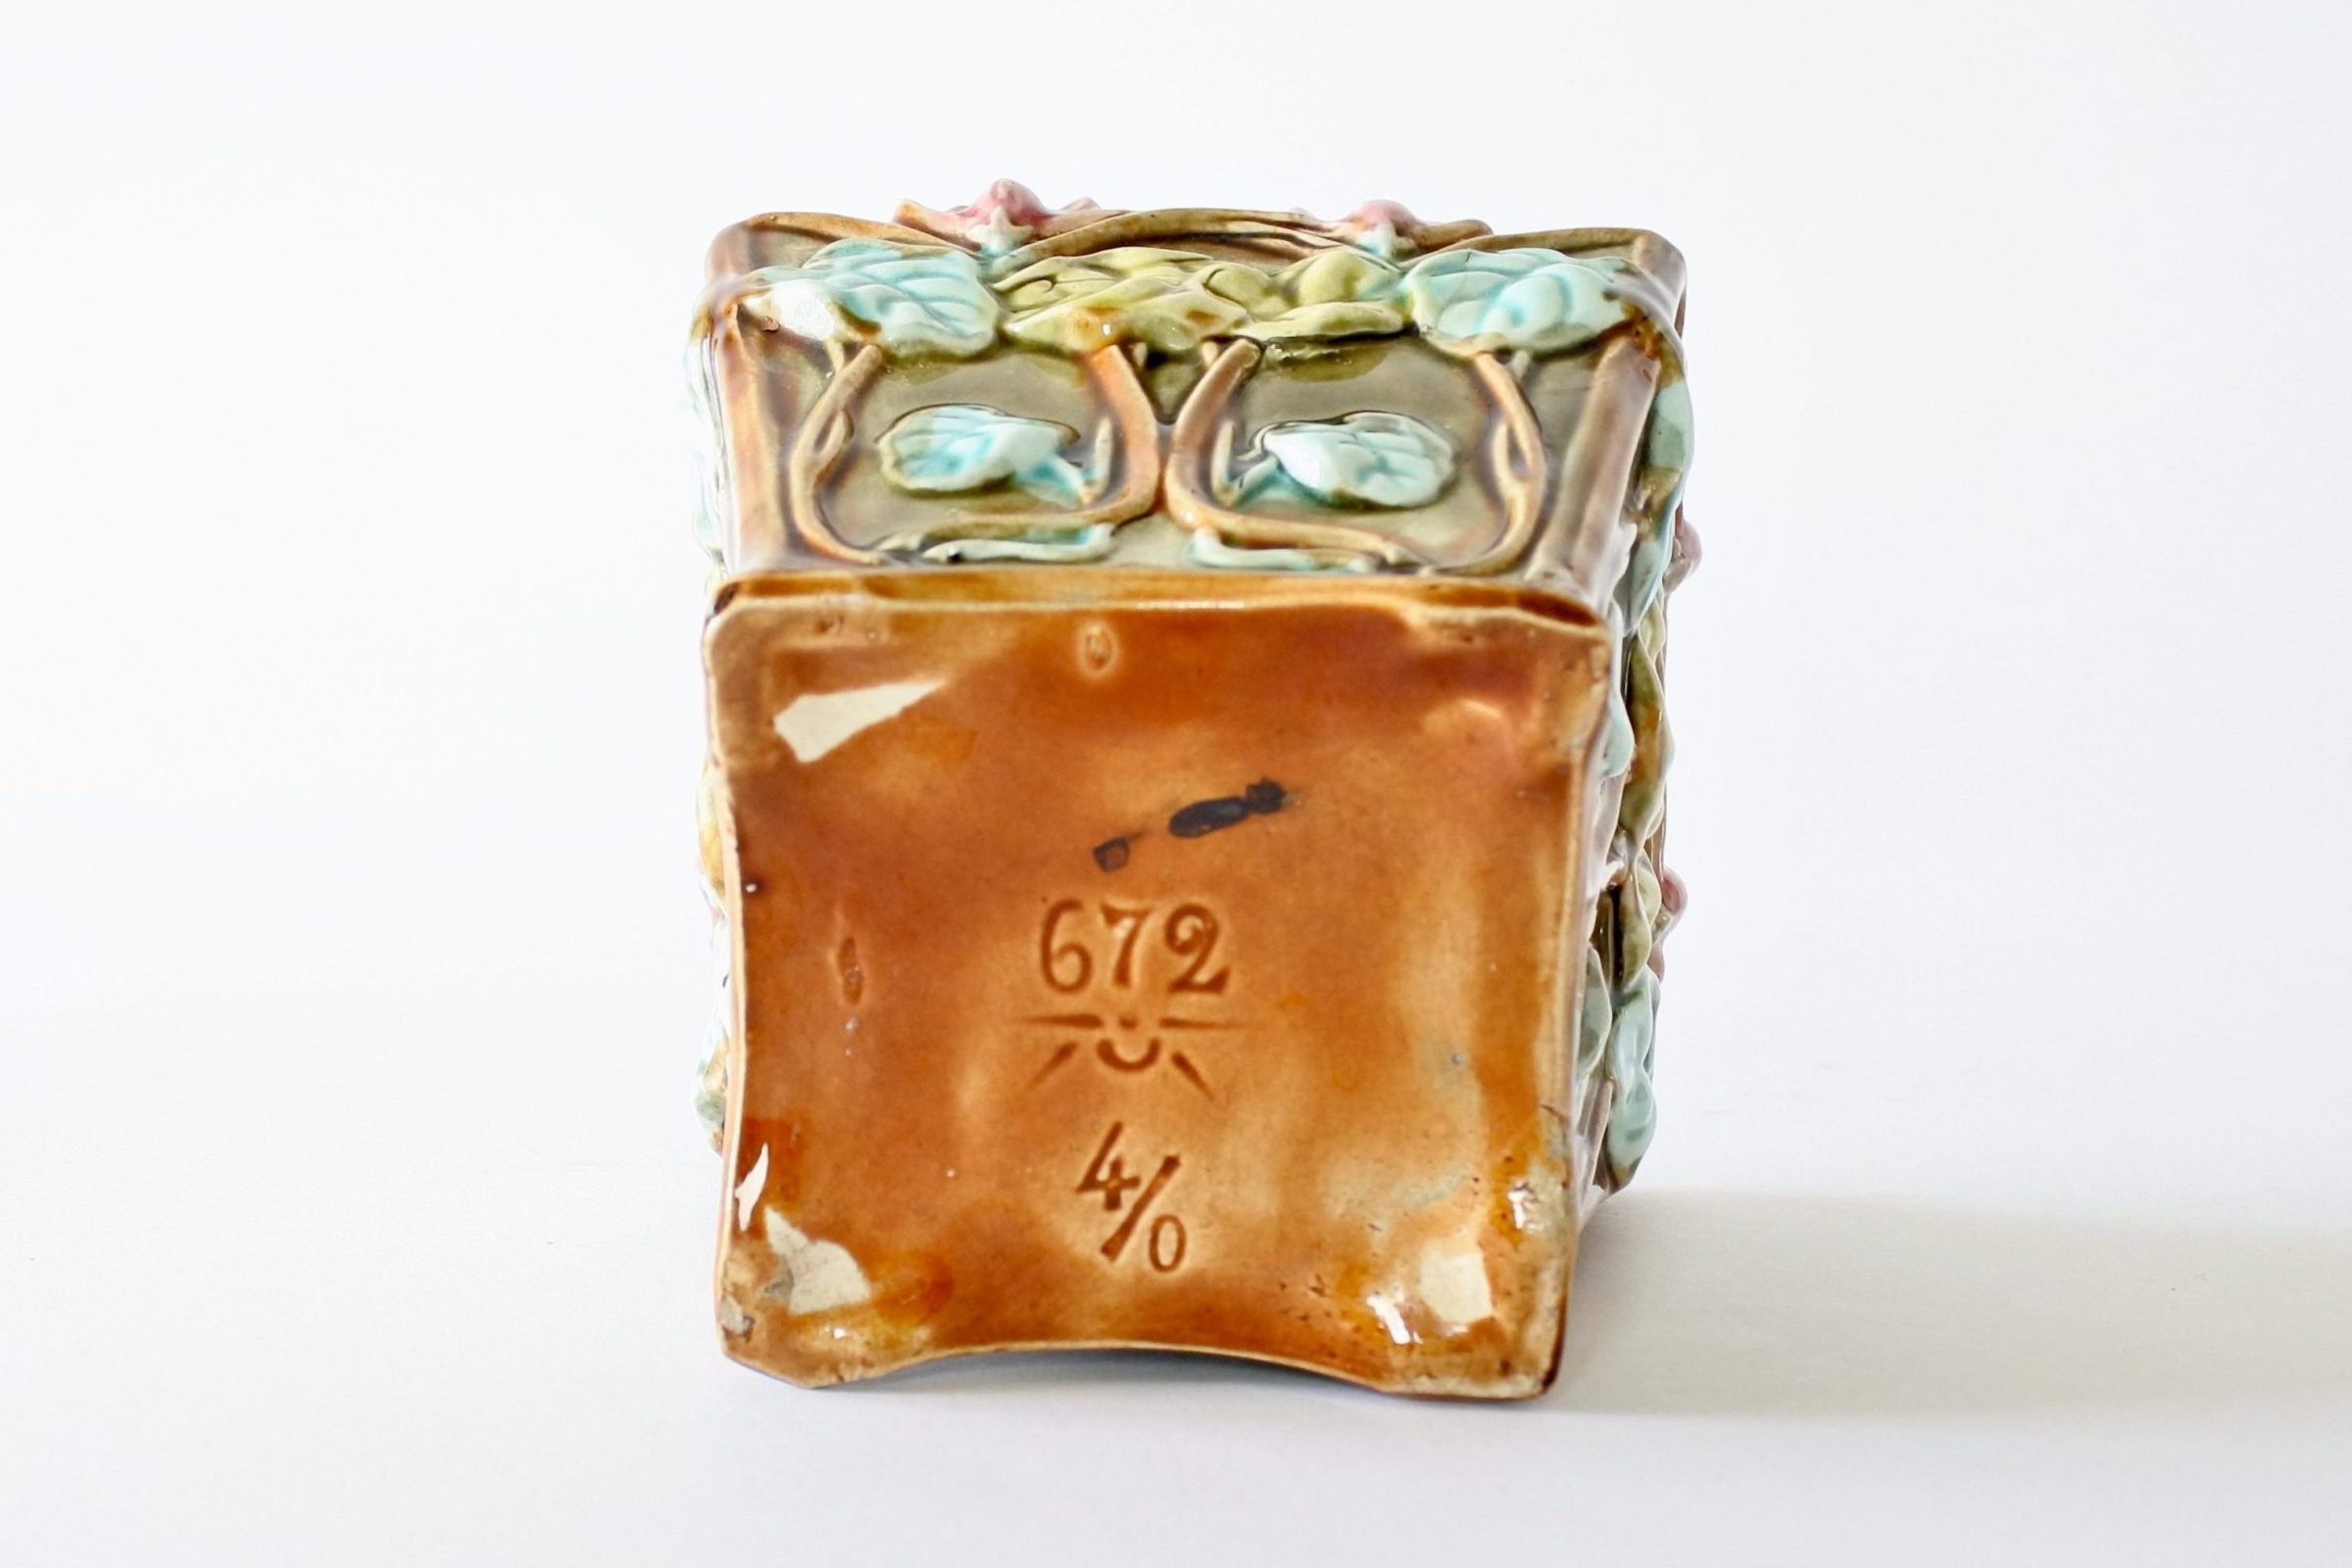 Cache pot Onnaing 672 in ceramica barbotine con ciclamini in rilievo - 6